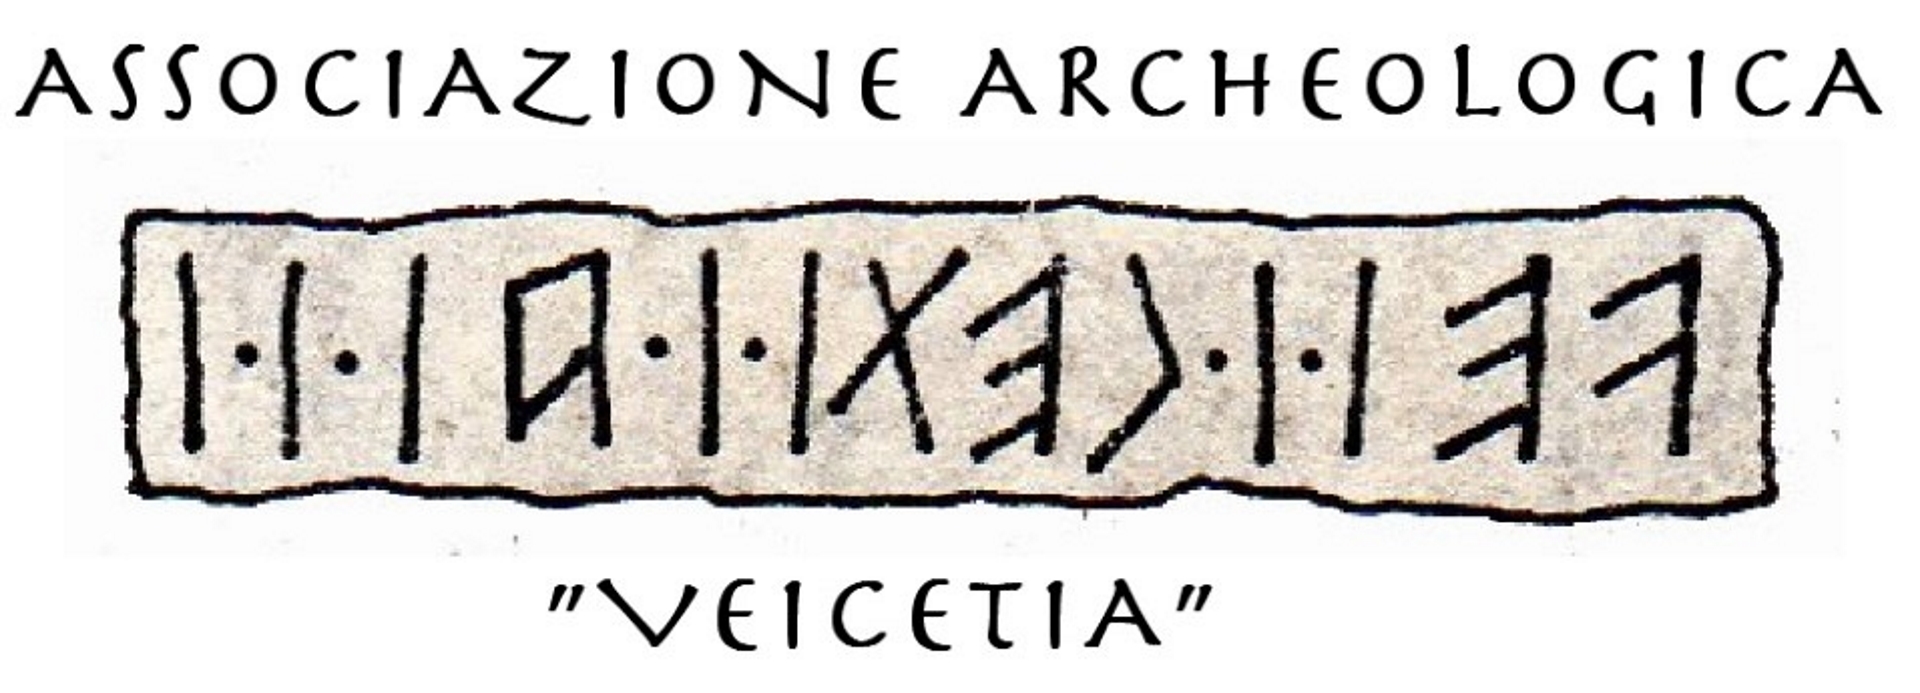 Veicetia dona la mappa di Vicenza Romana